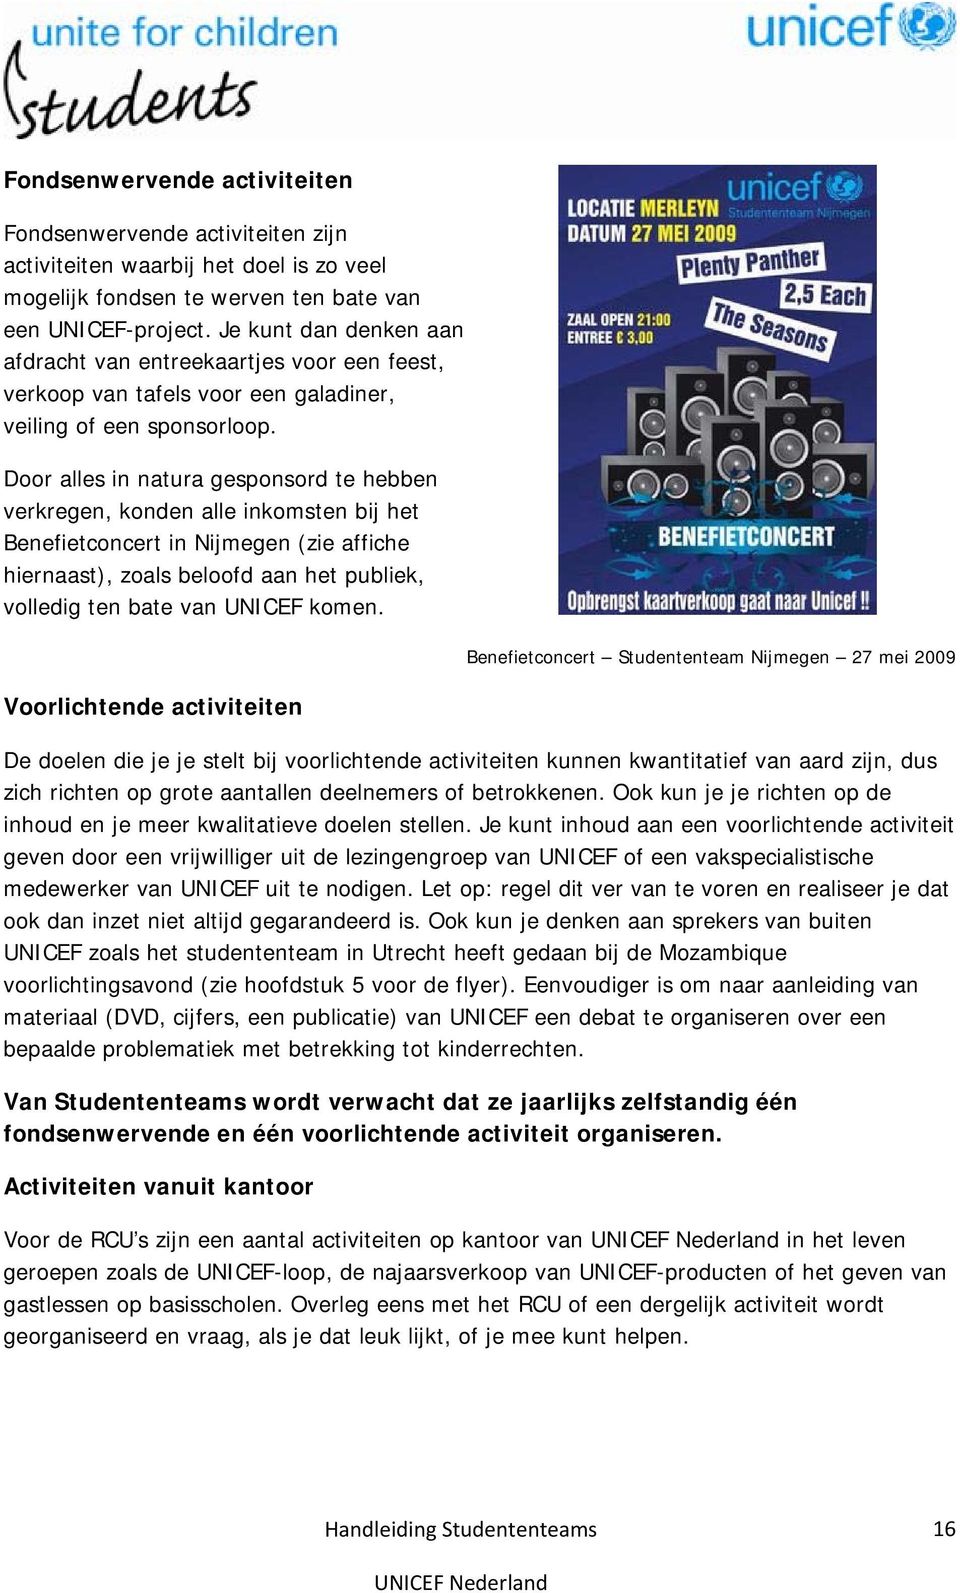 Door alles in natura gesponsord te hebben verkregen, konden alle inkomsten bij het Benefietconcert in Nijmegen (zie affiche hiernaast), zoals beloofd aan het publiek, volledig ten bate van UNICEF